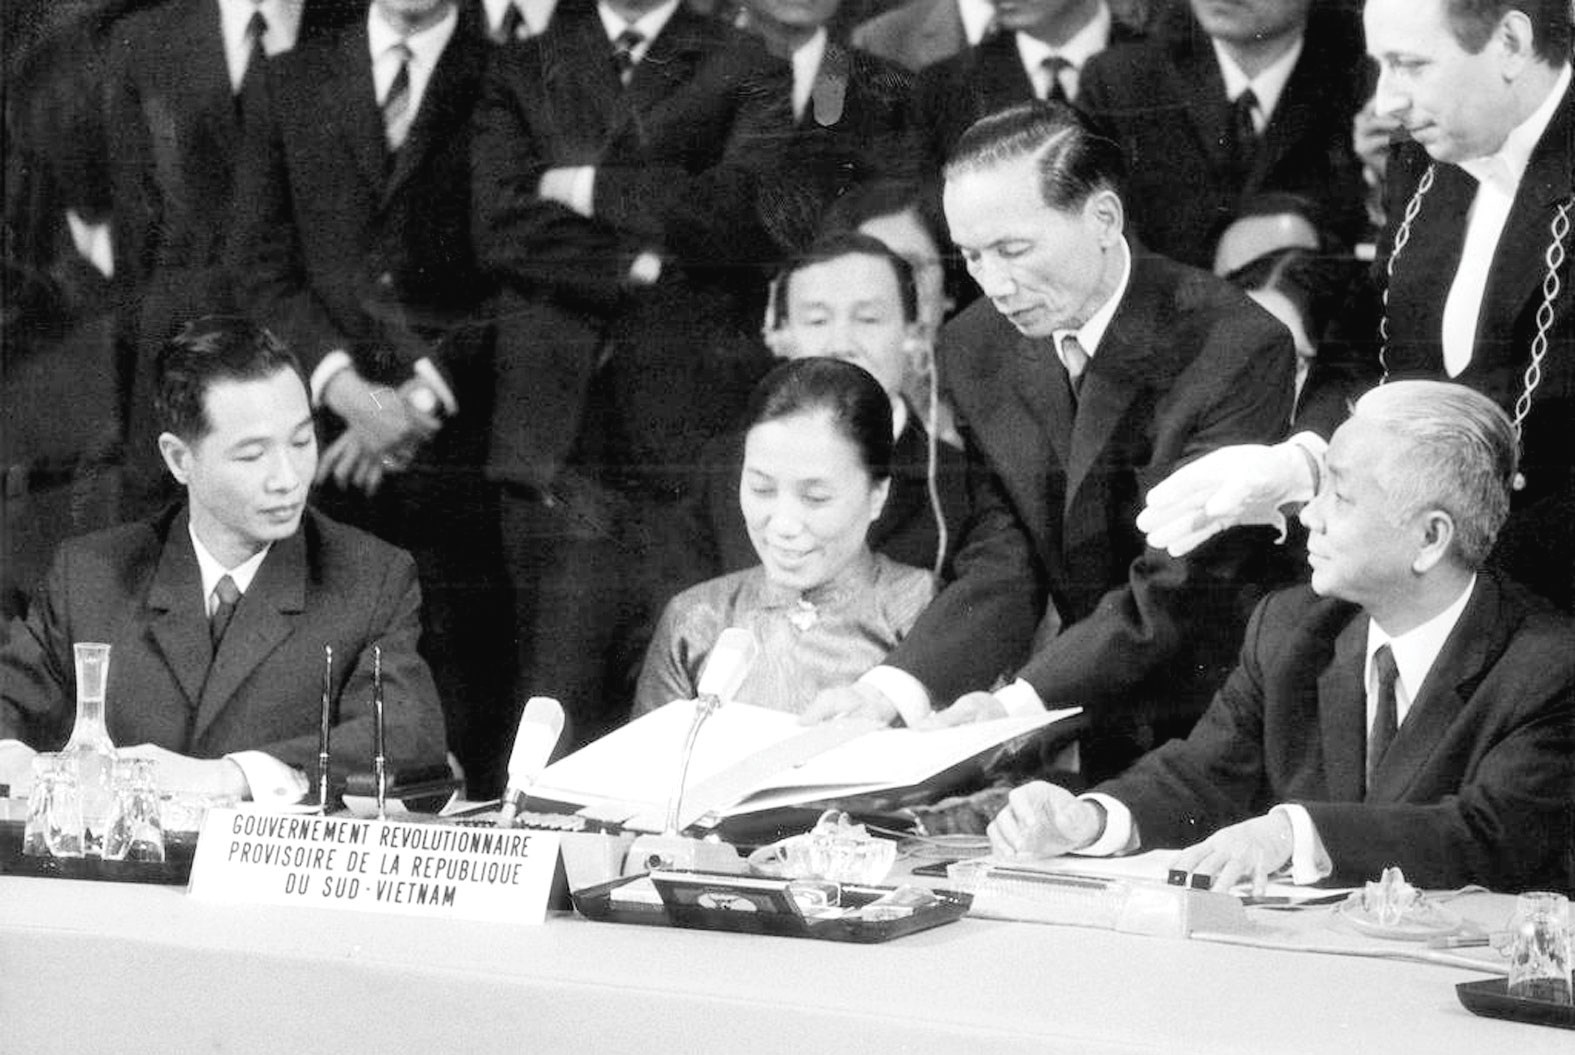 Hiệp định Pari - thắng lợi có ý nghĩa chiến lược dẫn đến đại thắng mùa Xuân năm 1975, giải phóng miền Nam, thống nhất đất nước